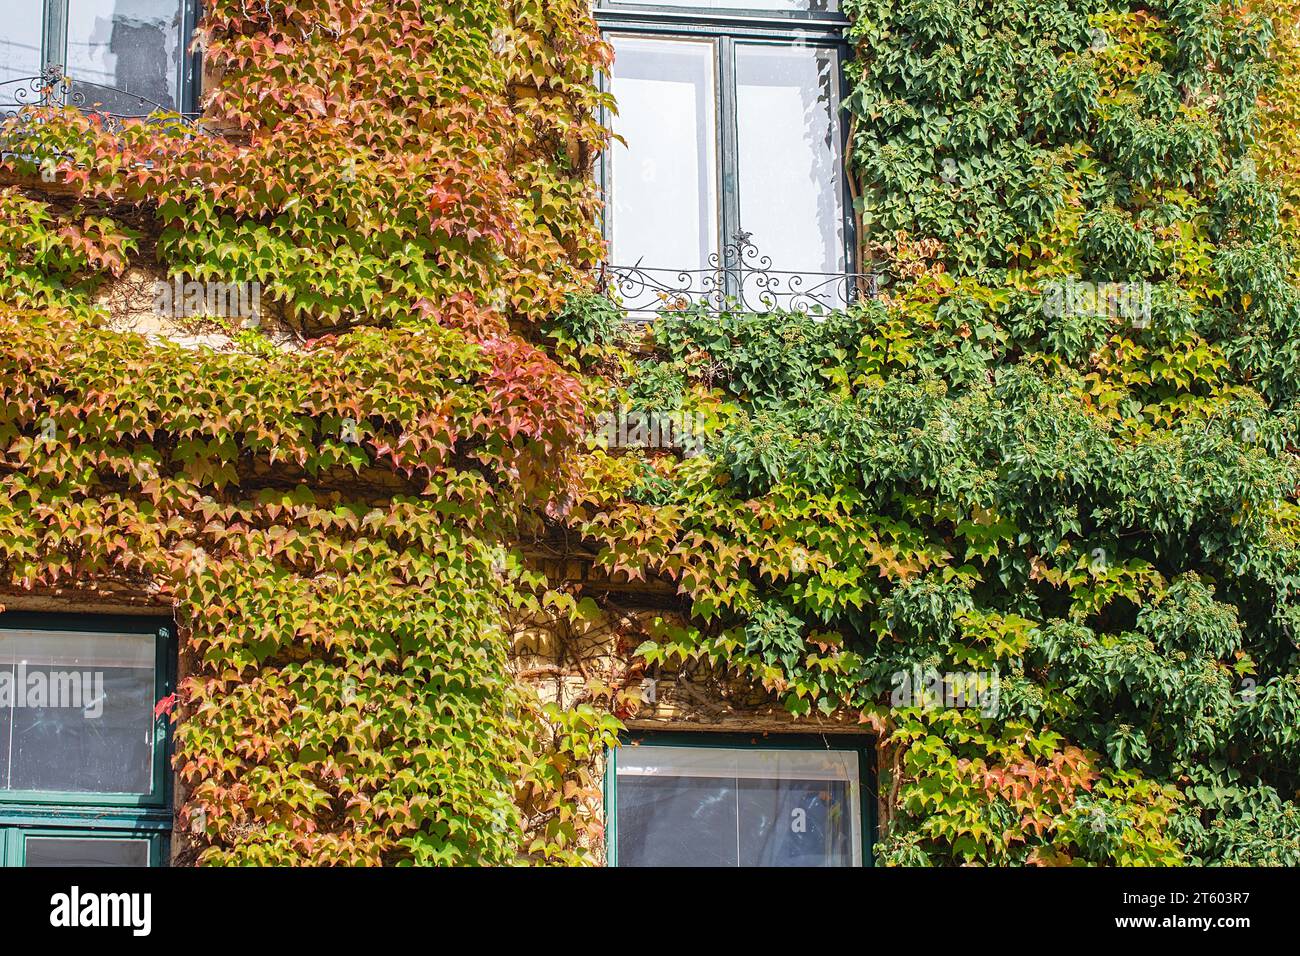 Die Wand ist mit roten Efeu-Herbstblättern bedeckt. Rote, gelbe und grüne Herbstblätter an der Wand, Hintergrund. Rote Blätter von Jungtrauben, Herbstfarben. Wand o Stockfoto